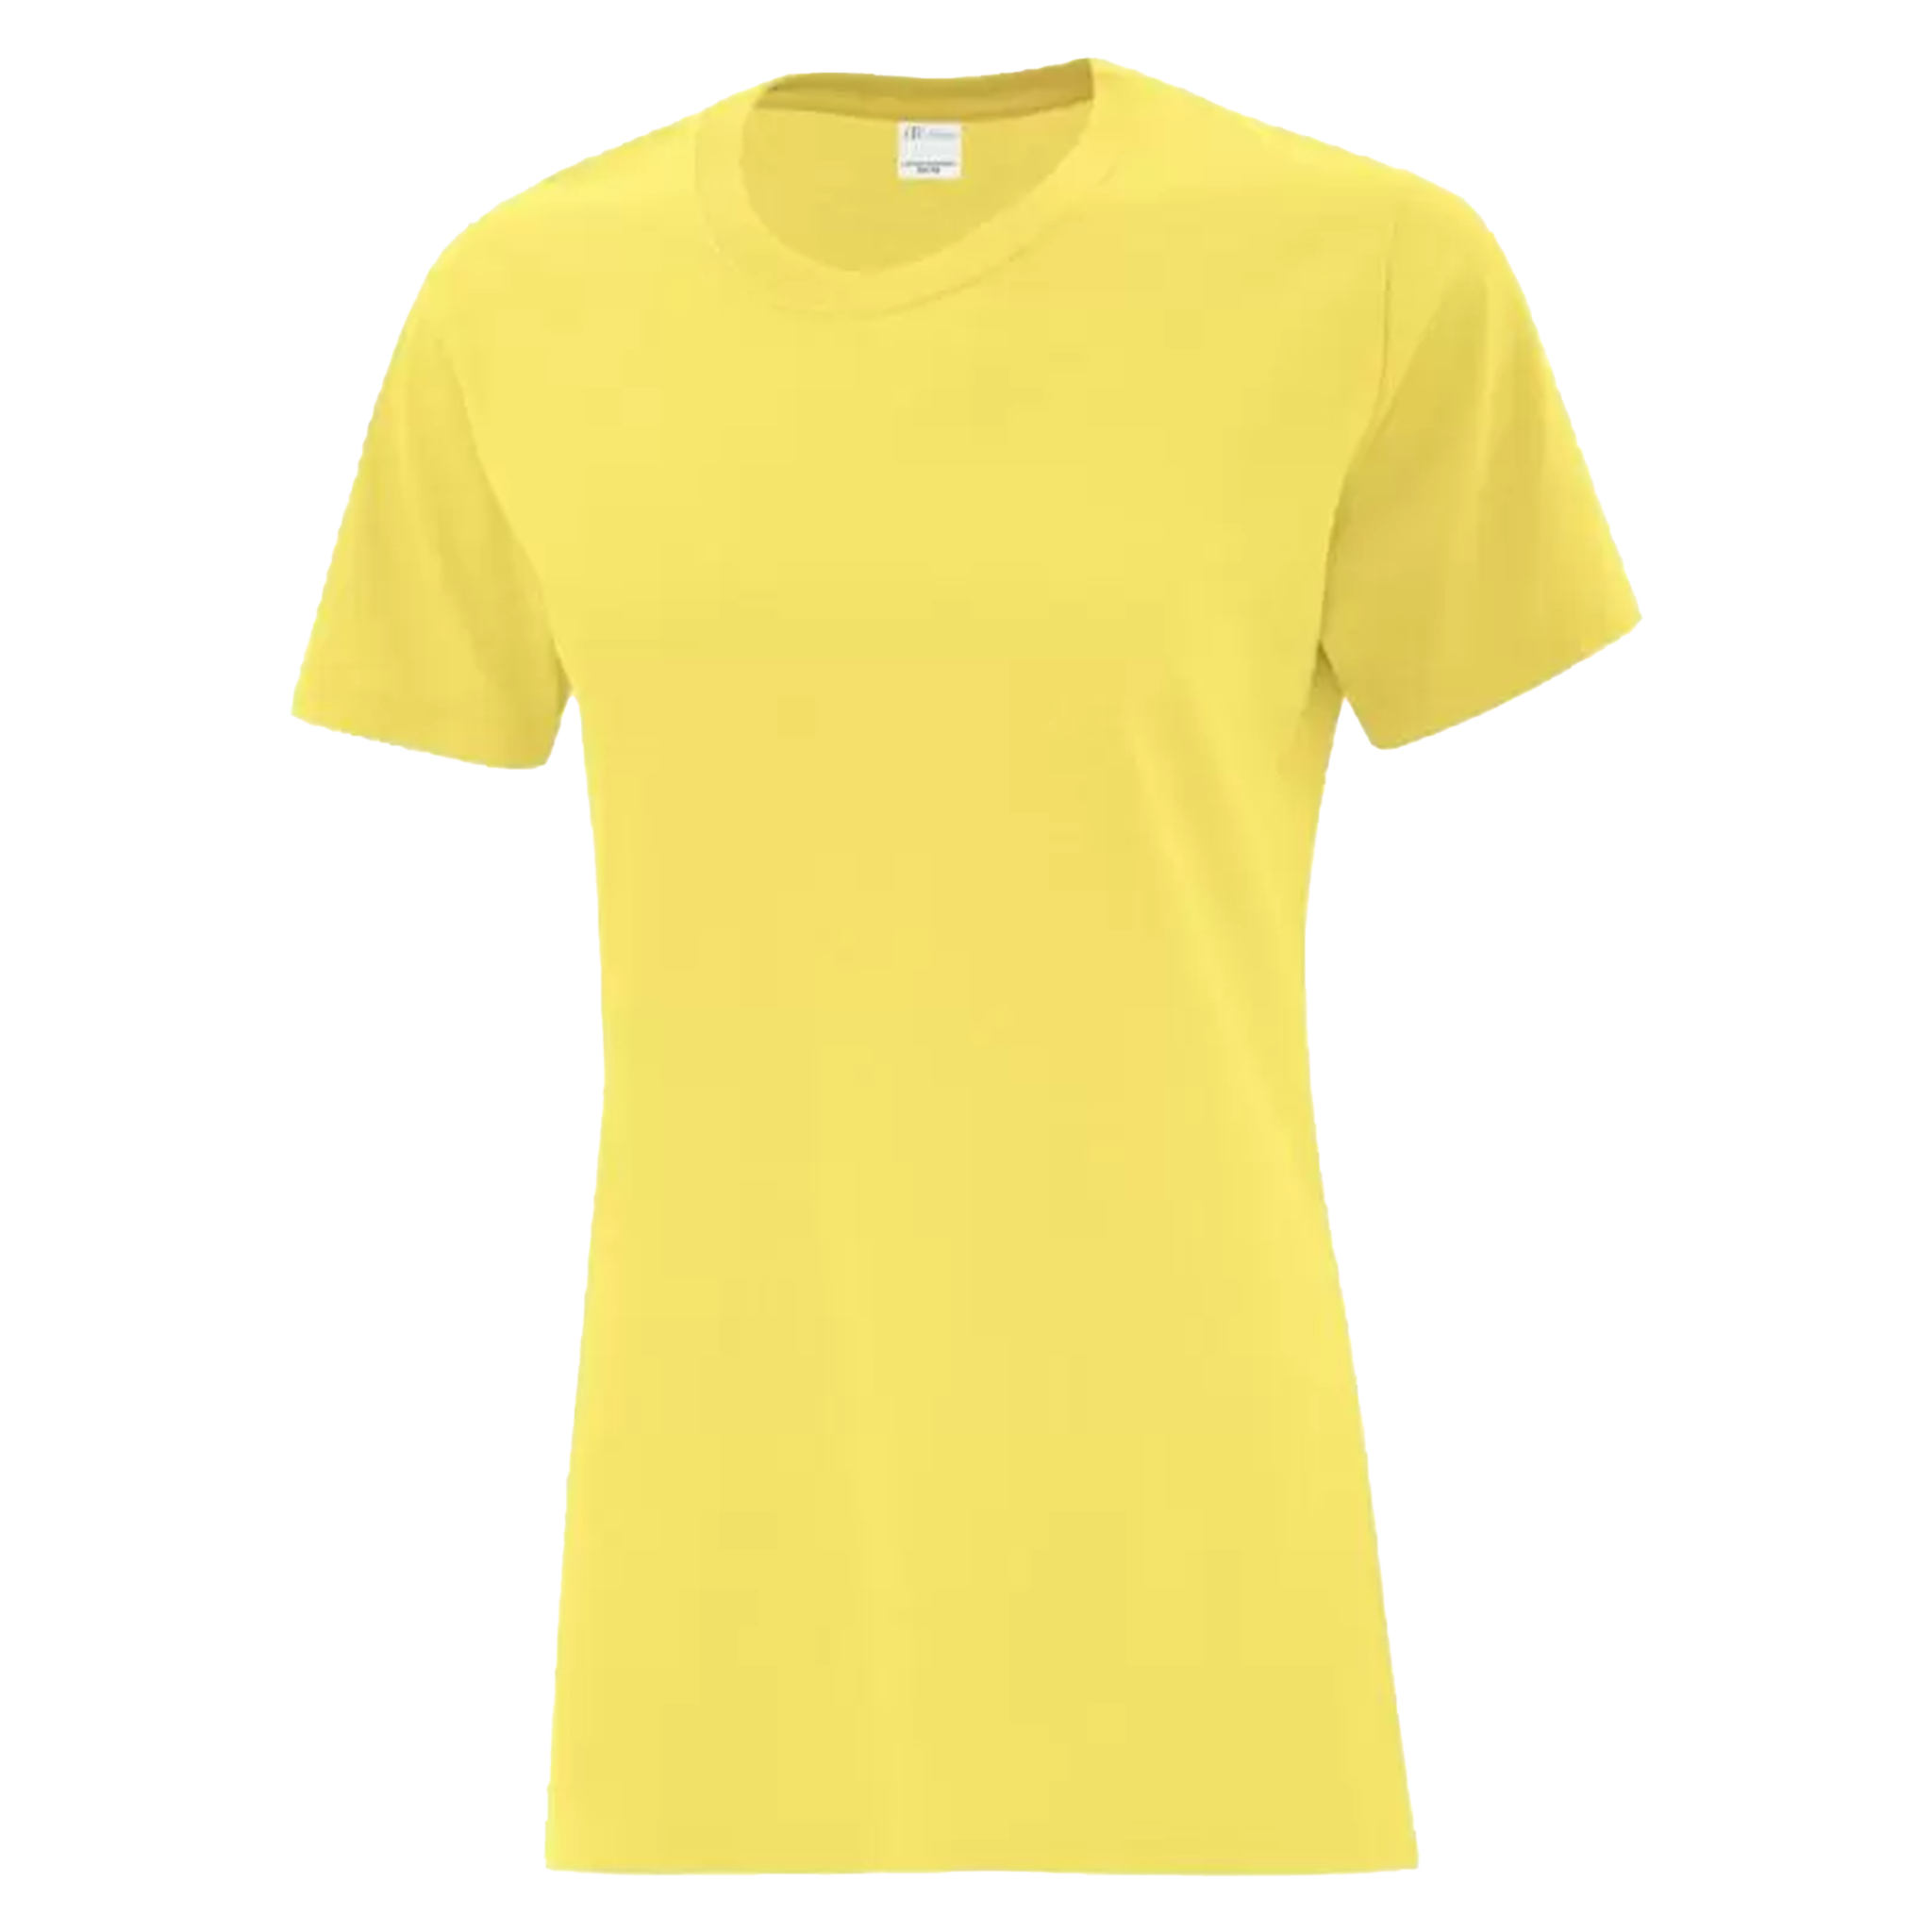 ATC Everyday Cotton T-Shirt - Women's Sizing XS-4XL - Yellow